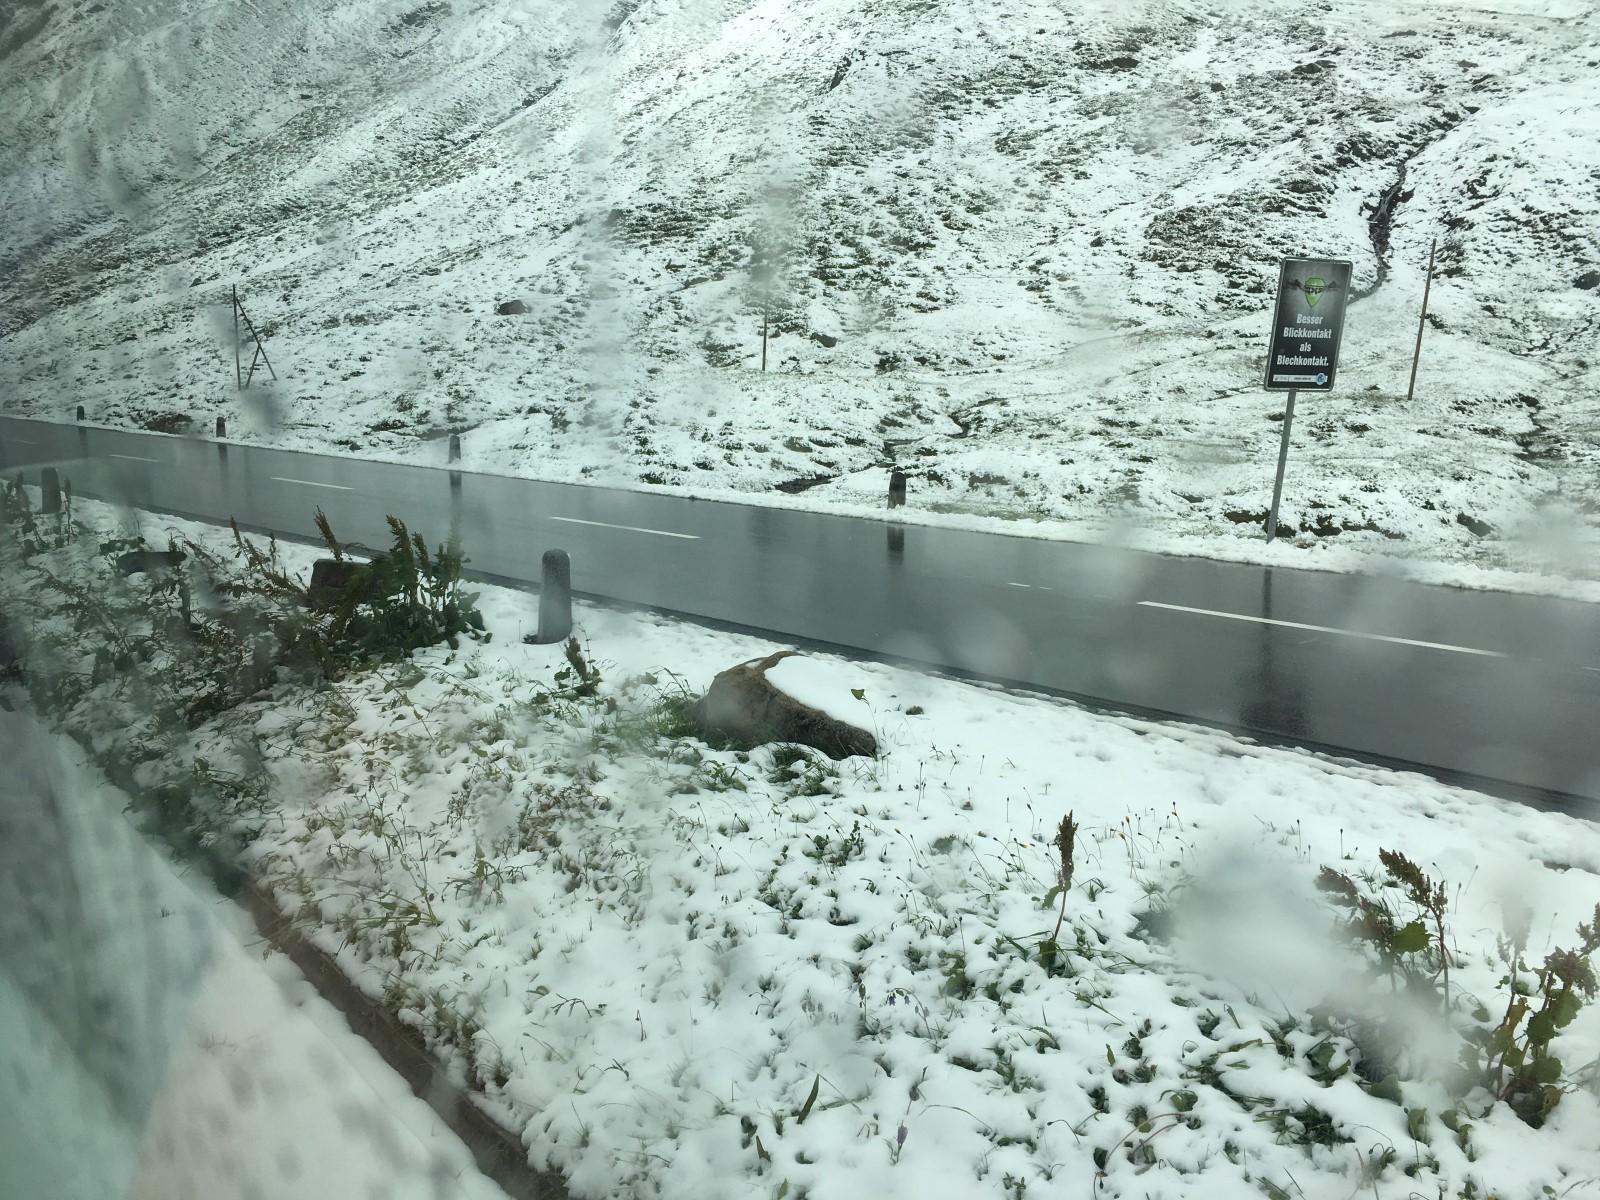 "بالصور" جولة مع قطار جلاسير إكسبريس عبر جبال اﻷلب السويسرية 36